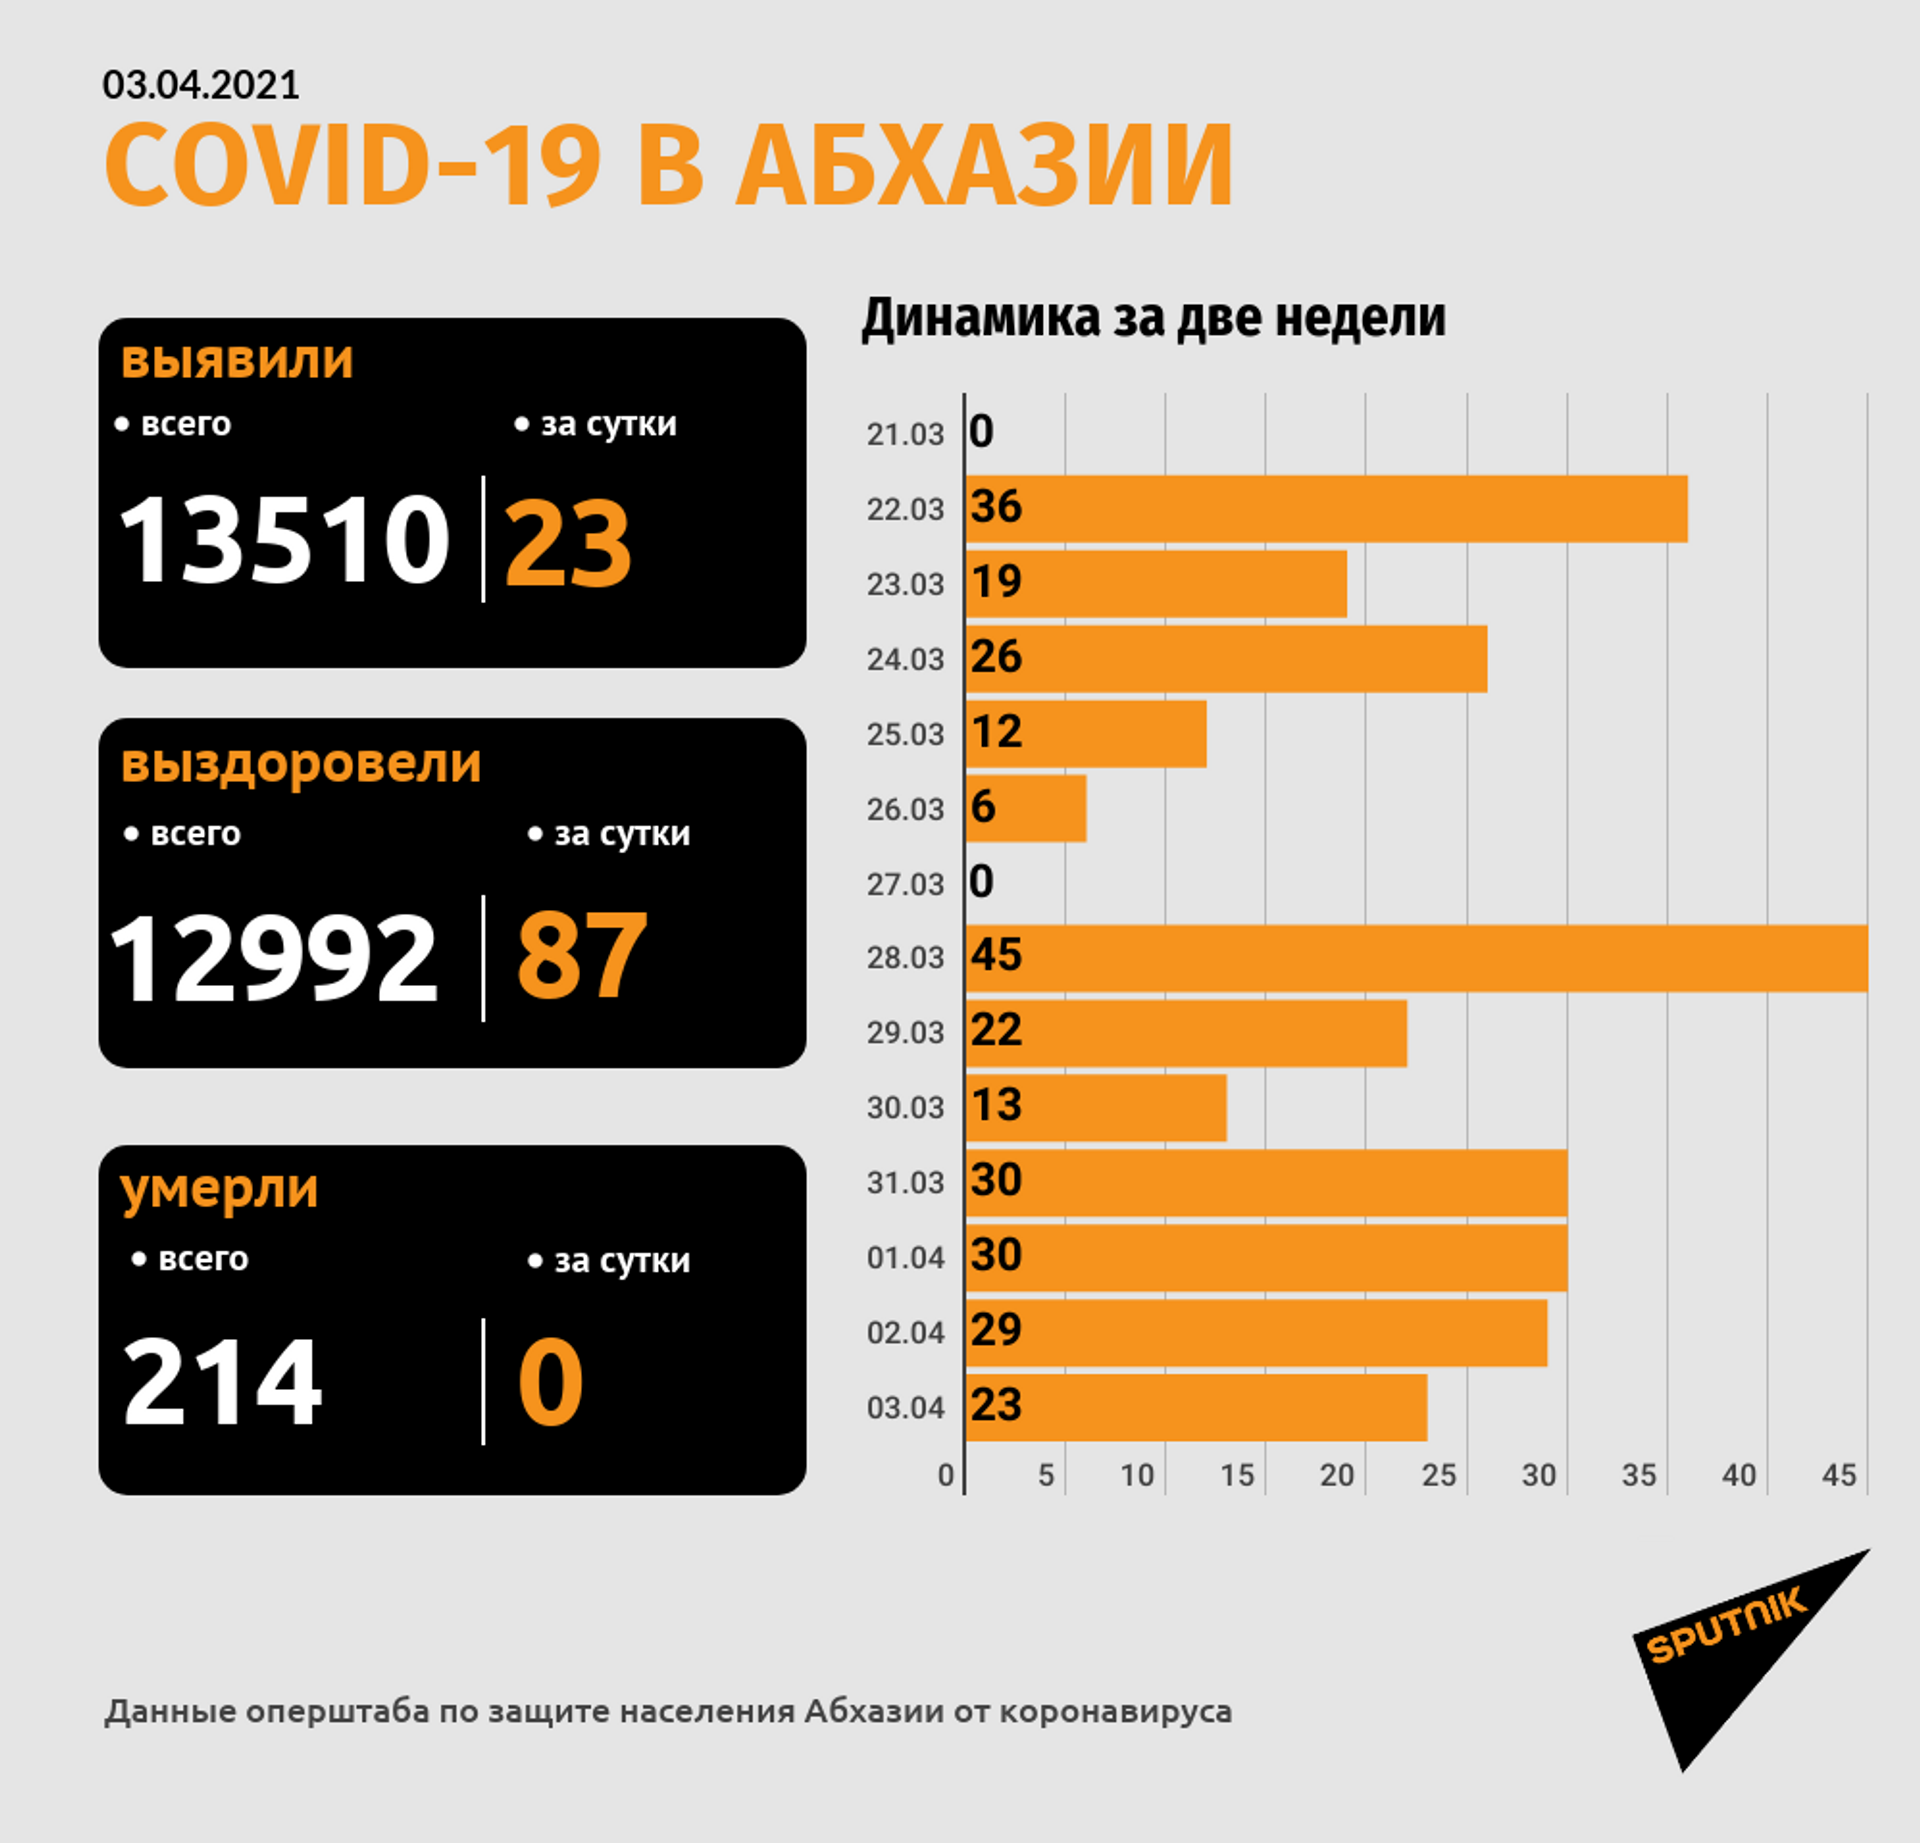 Более 20 случаев заражения COVID-19 выявили в Абхазии за прошедшие сутки - Sputnik Абхазия, 1920, 03.04.2021